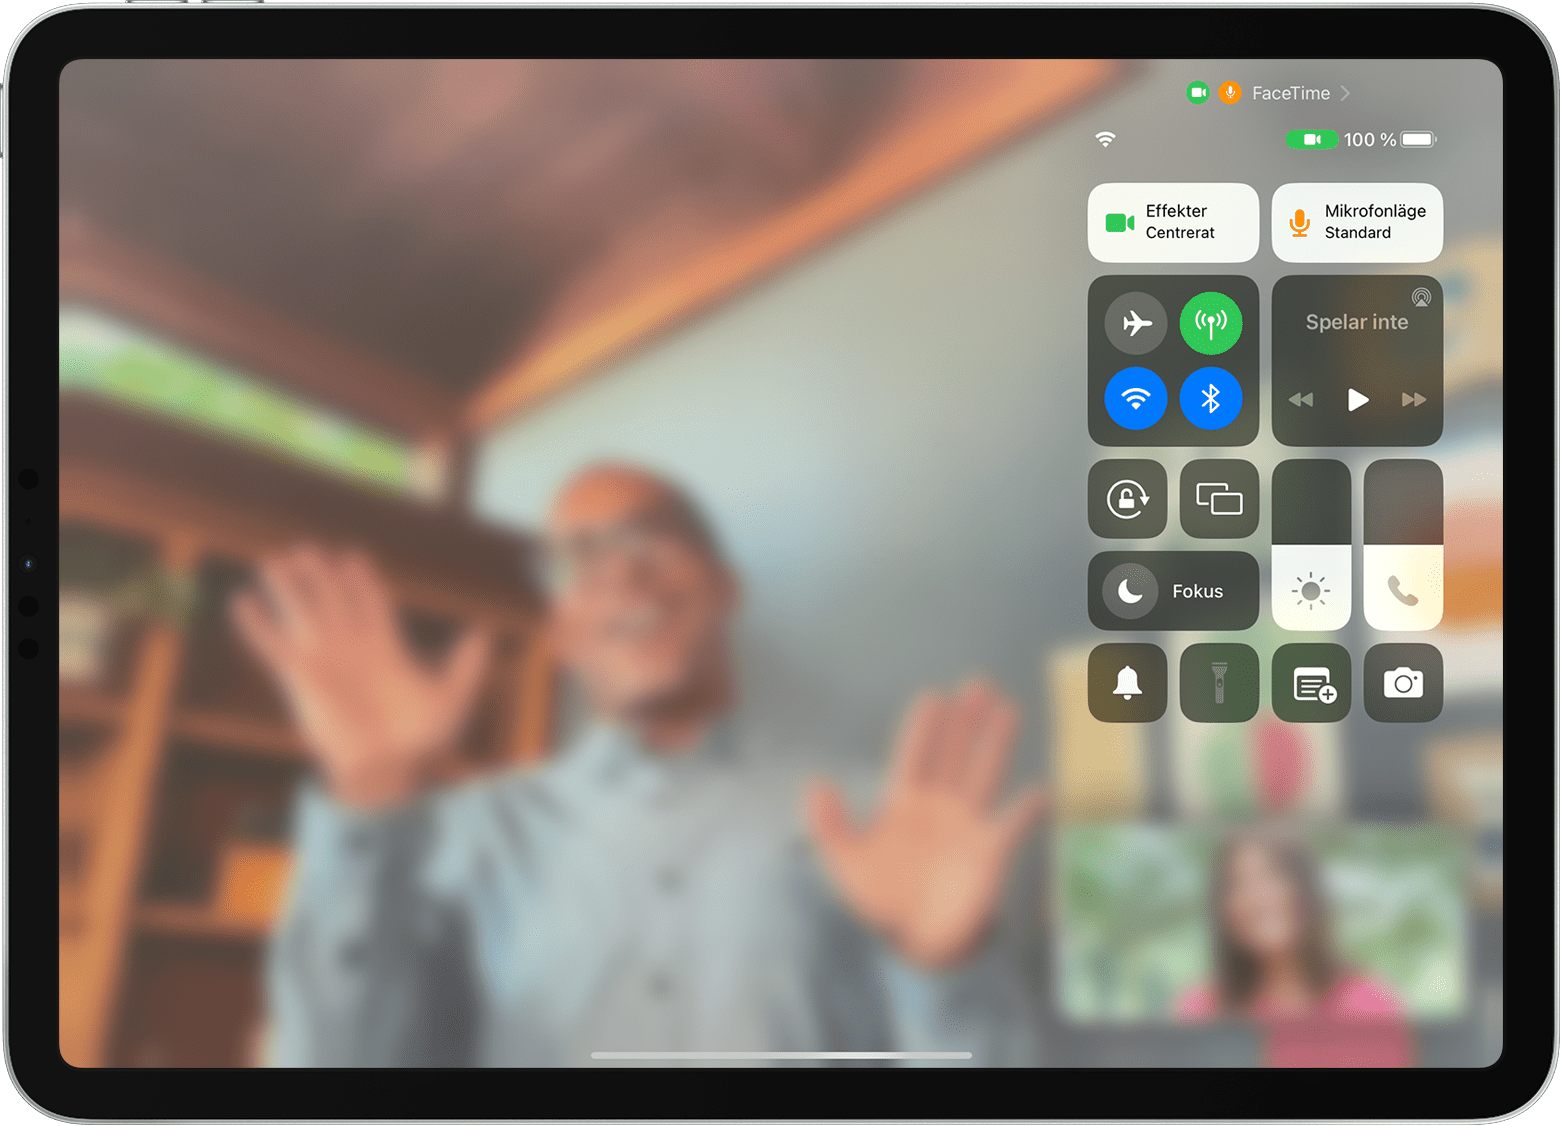 iPad-skärmen visar ett FaceTime-samtal med Kontrollcenter synligt, inklusive knappen Effekter￼